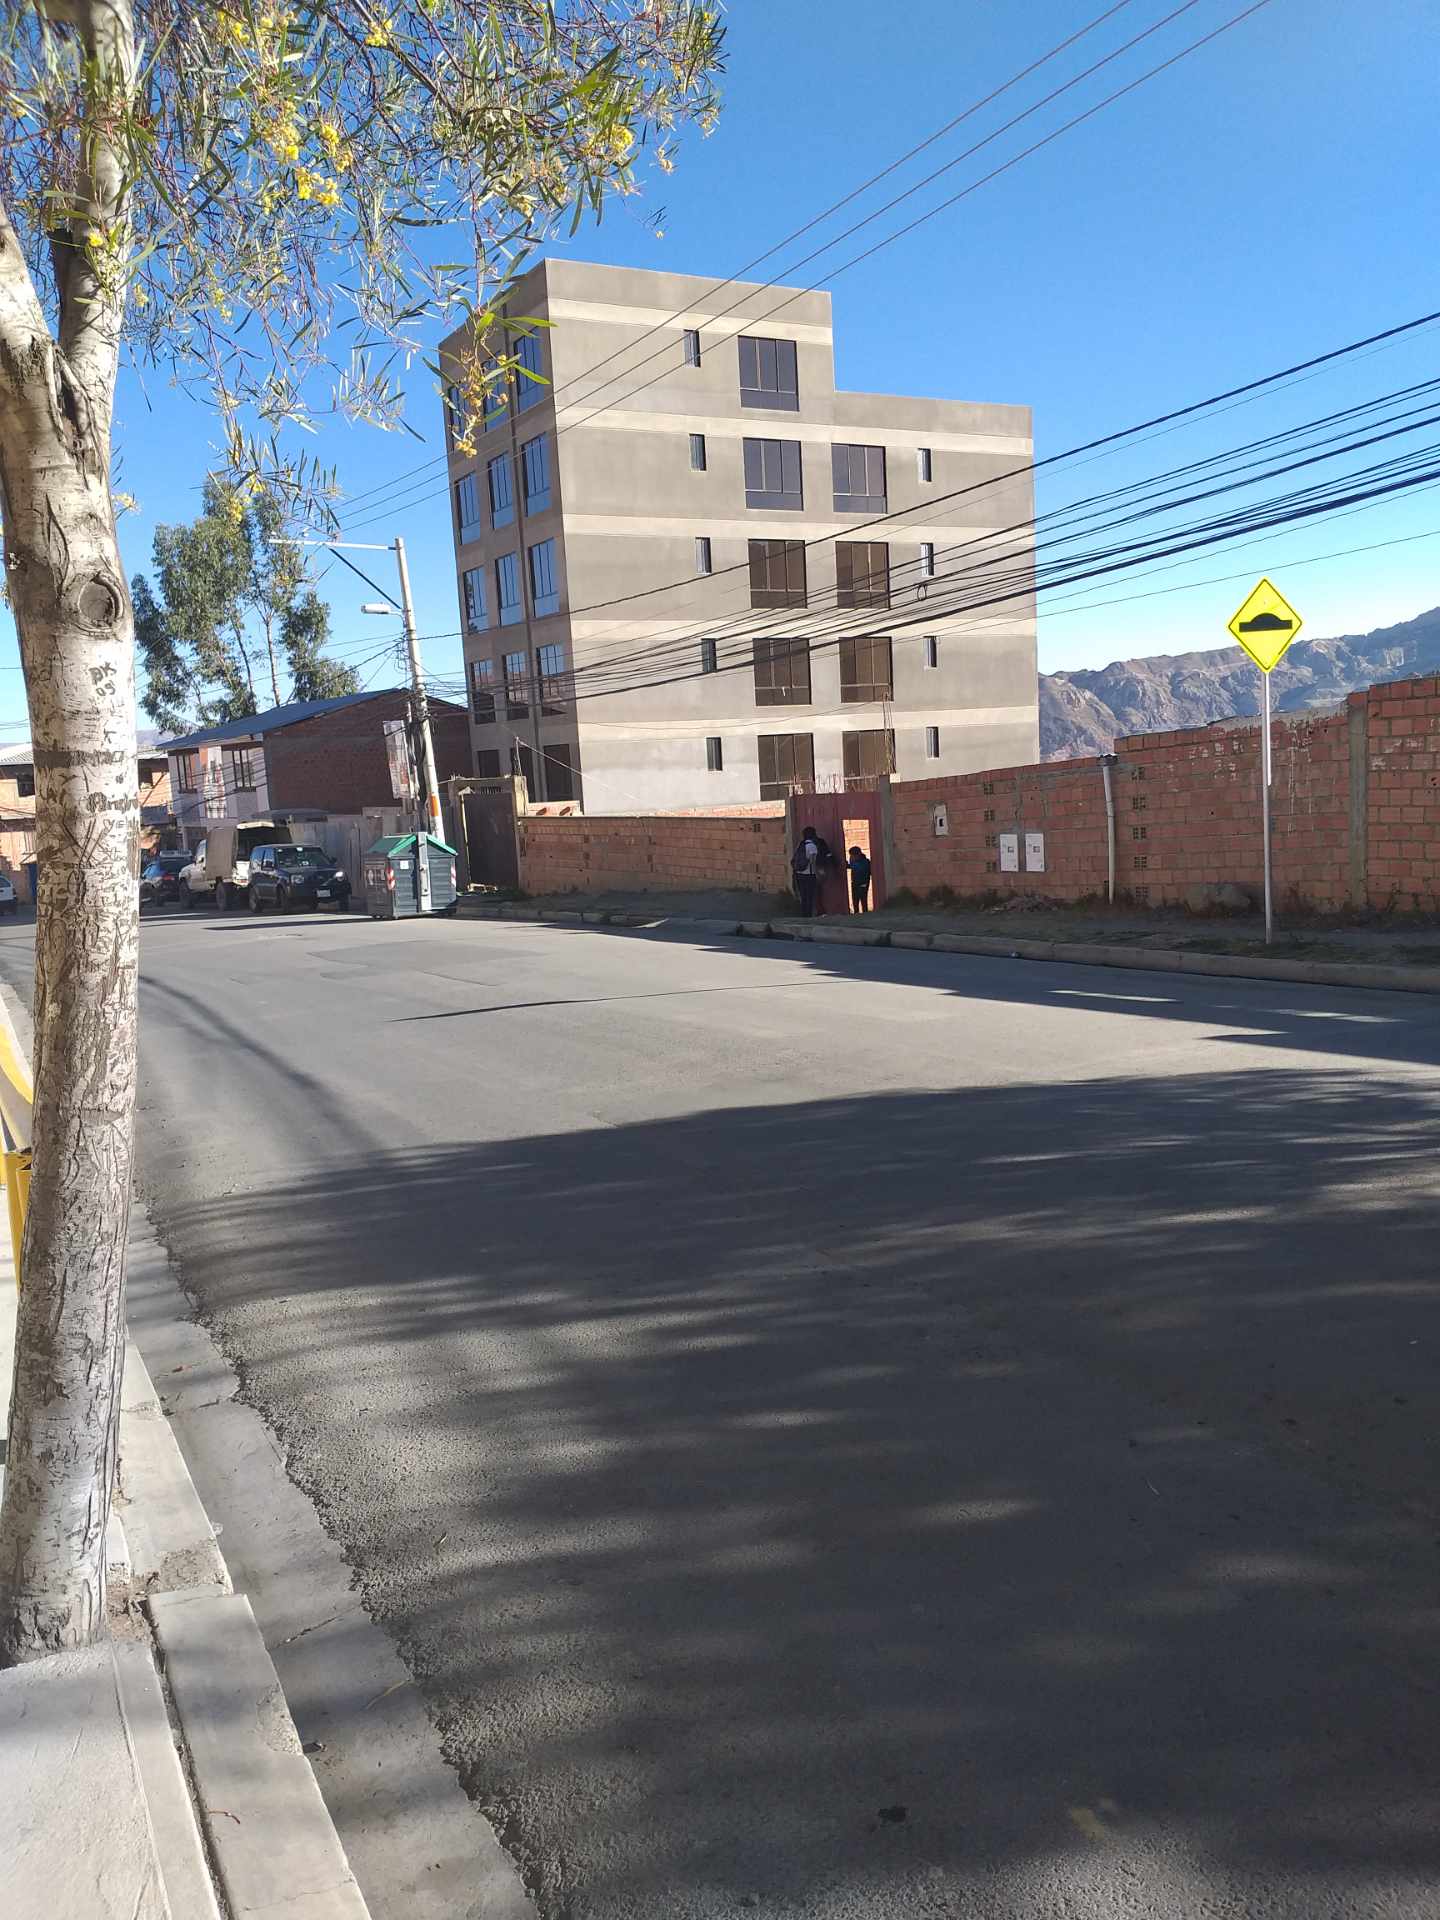 Departamento en VentaAlto Irpavi. Urbanización Virgen de las Nieves. Sobre Av.
Principal y calle2 Foto 6